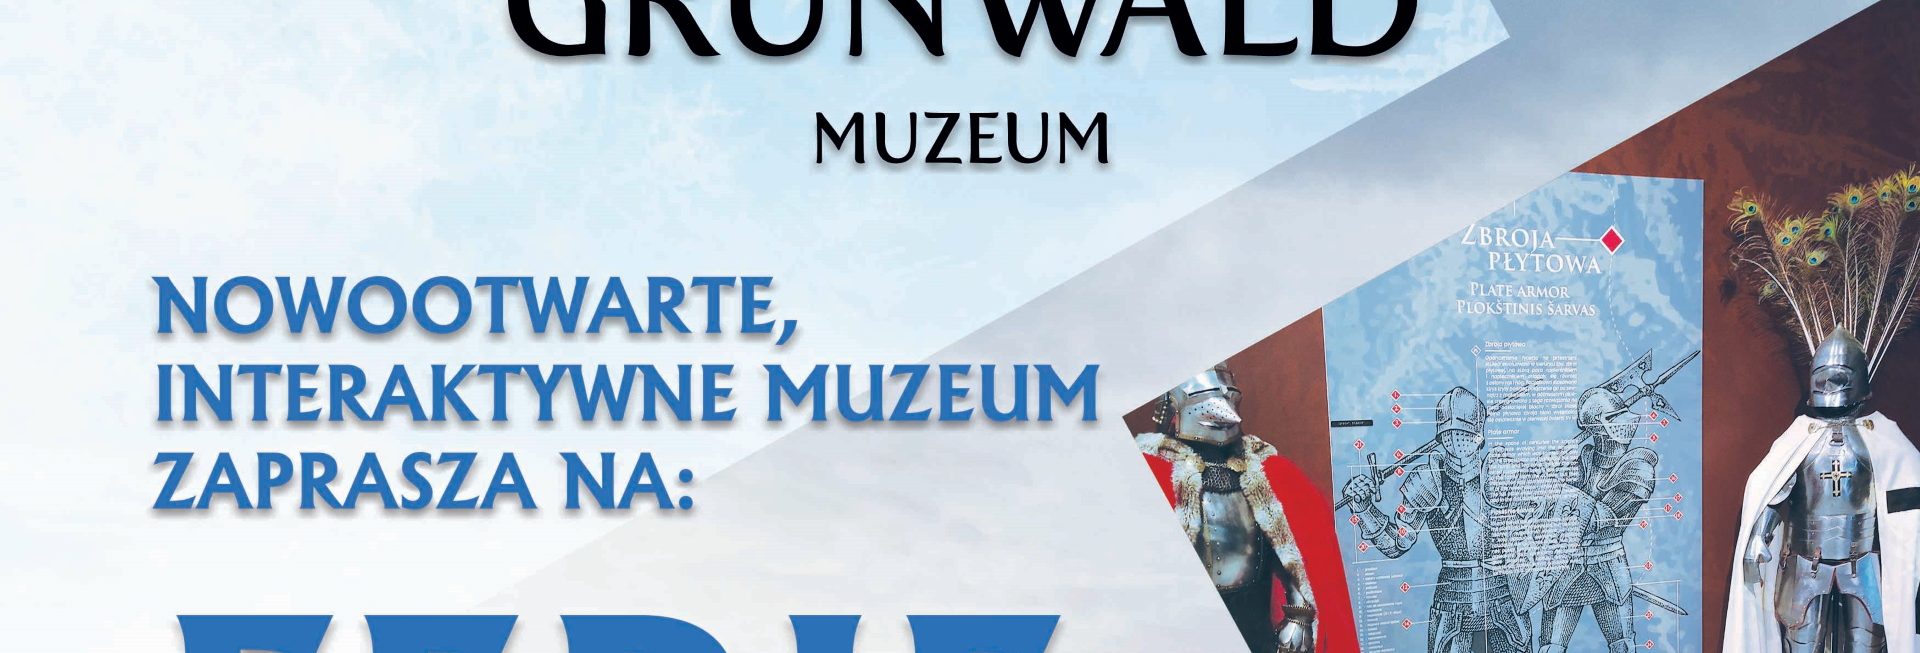 Plakat zapraszający od 16 stycznia do 26 lutego 2023 r. do Interaktywnego Muzeum w Grunwaldzie na Ferie z Historią Grunwald 2023.